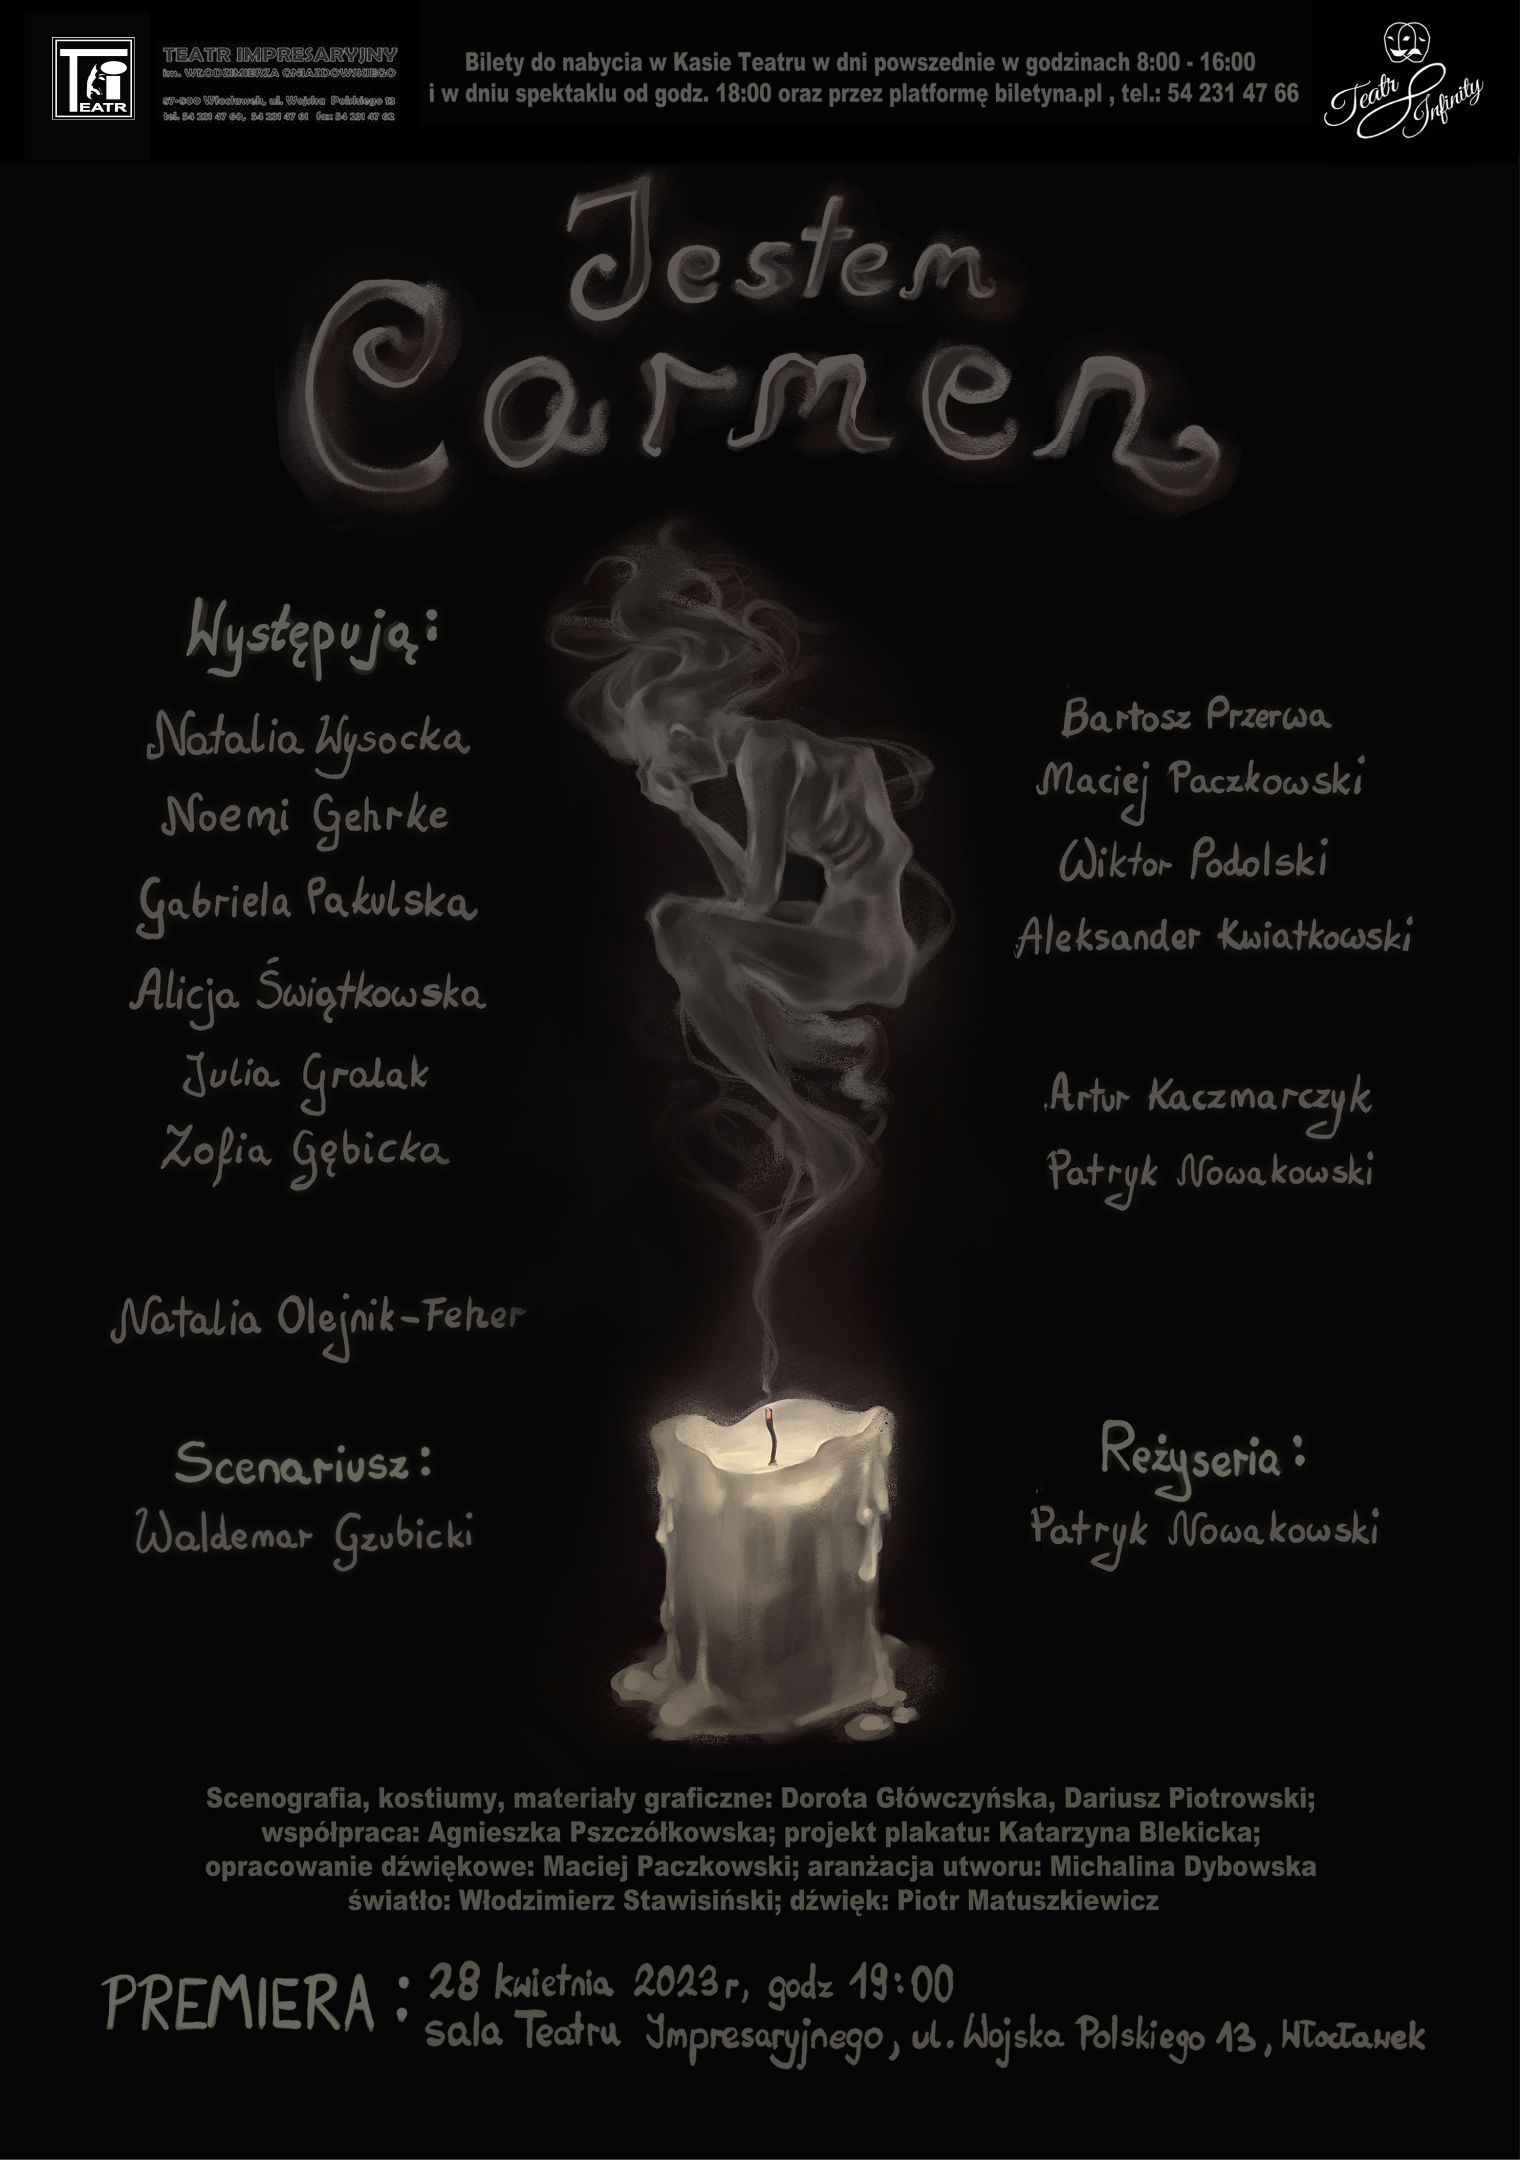 Jestem Carmen